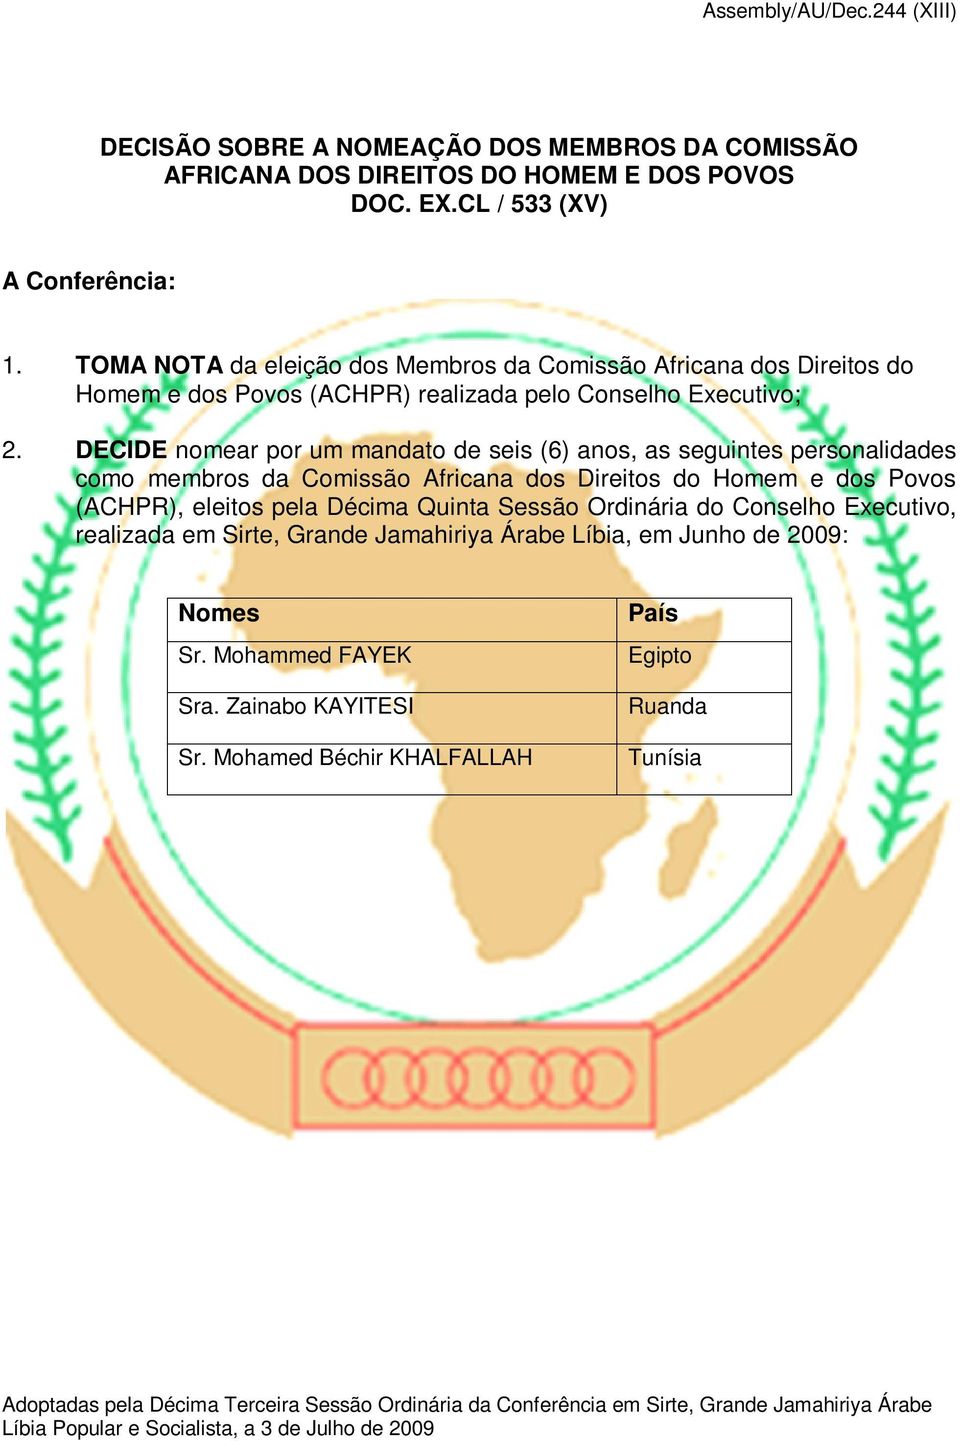 DECIDE nomear por um mandato de seis (6) anos, as seguintes personalidades como membros da Comissão Africana dos Direitos do Homem e dos Povos (ACHPR), eleitos pela